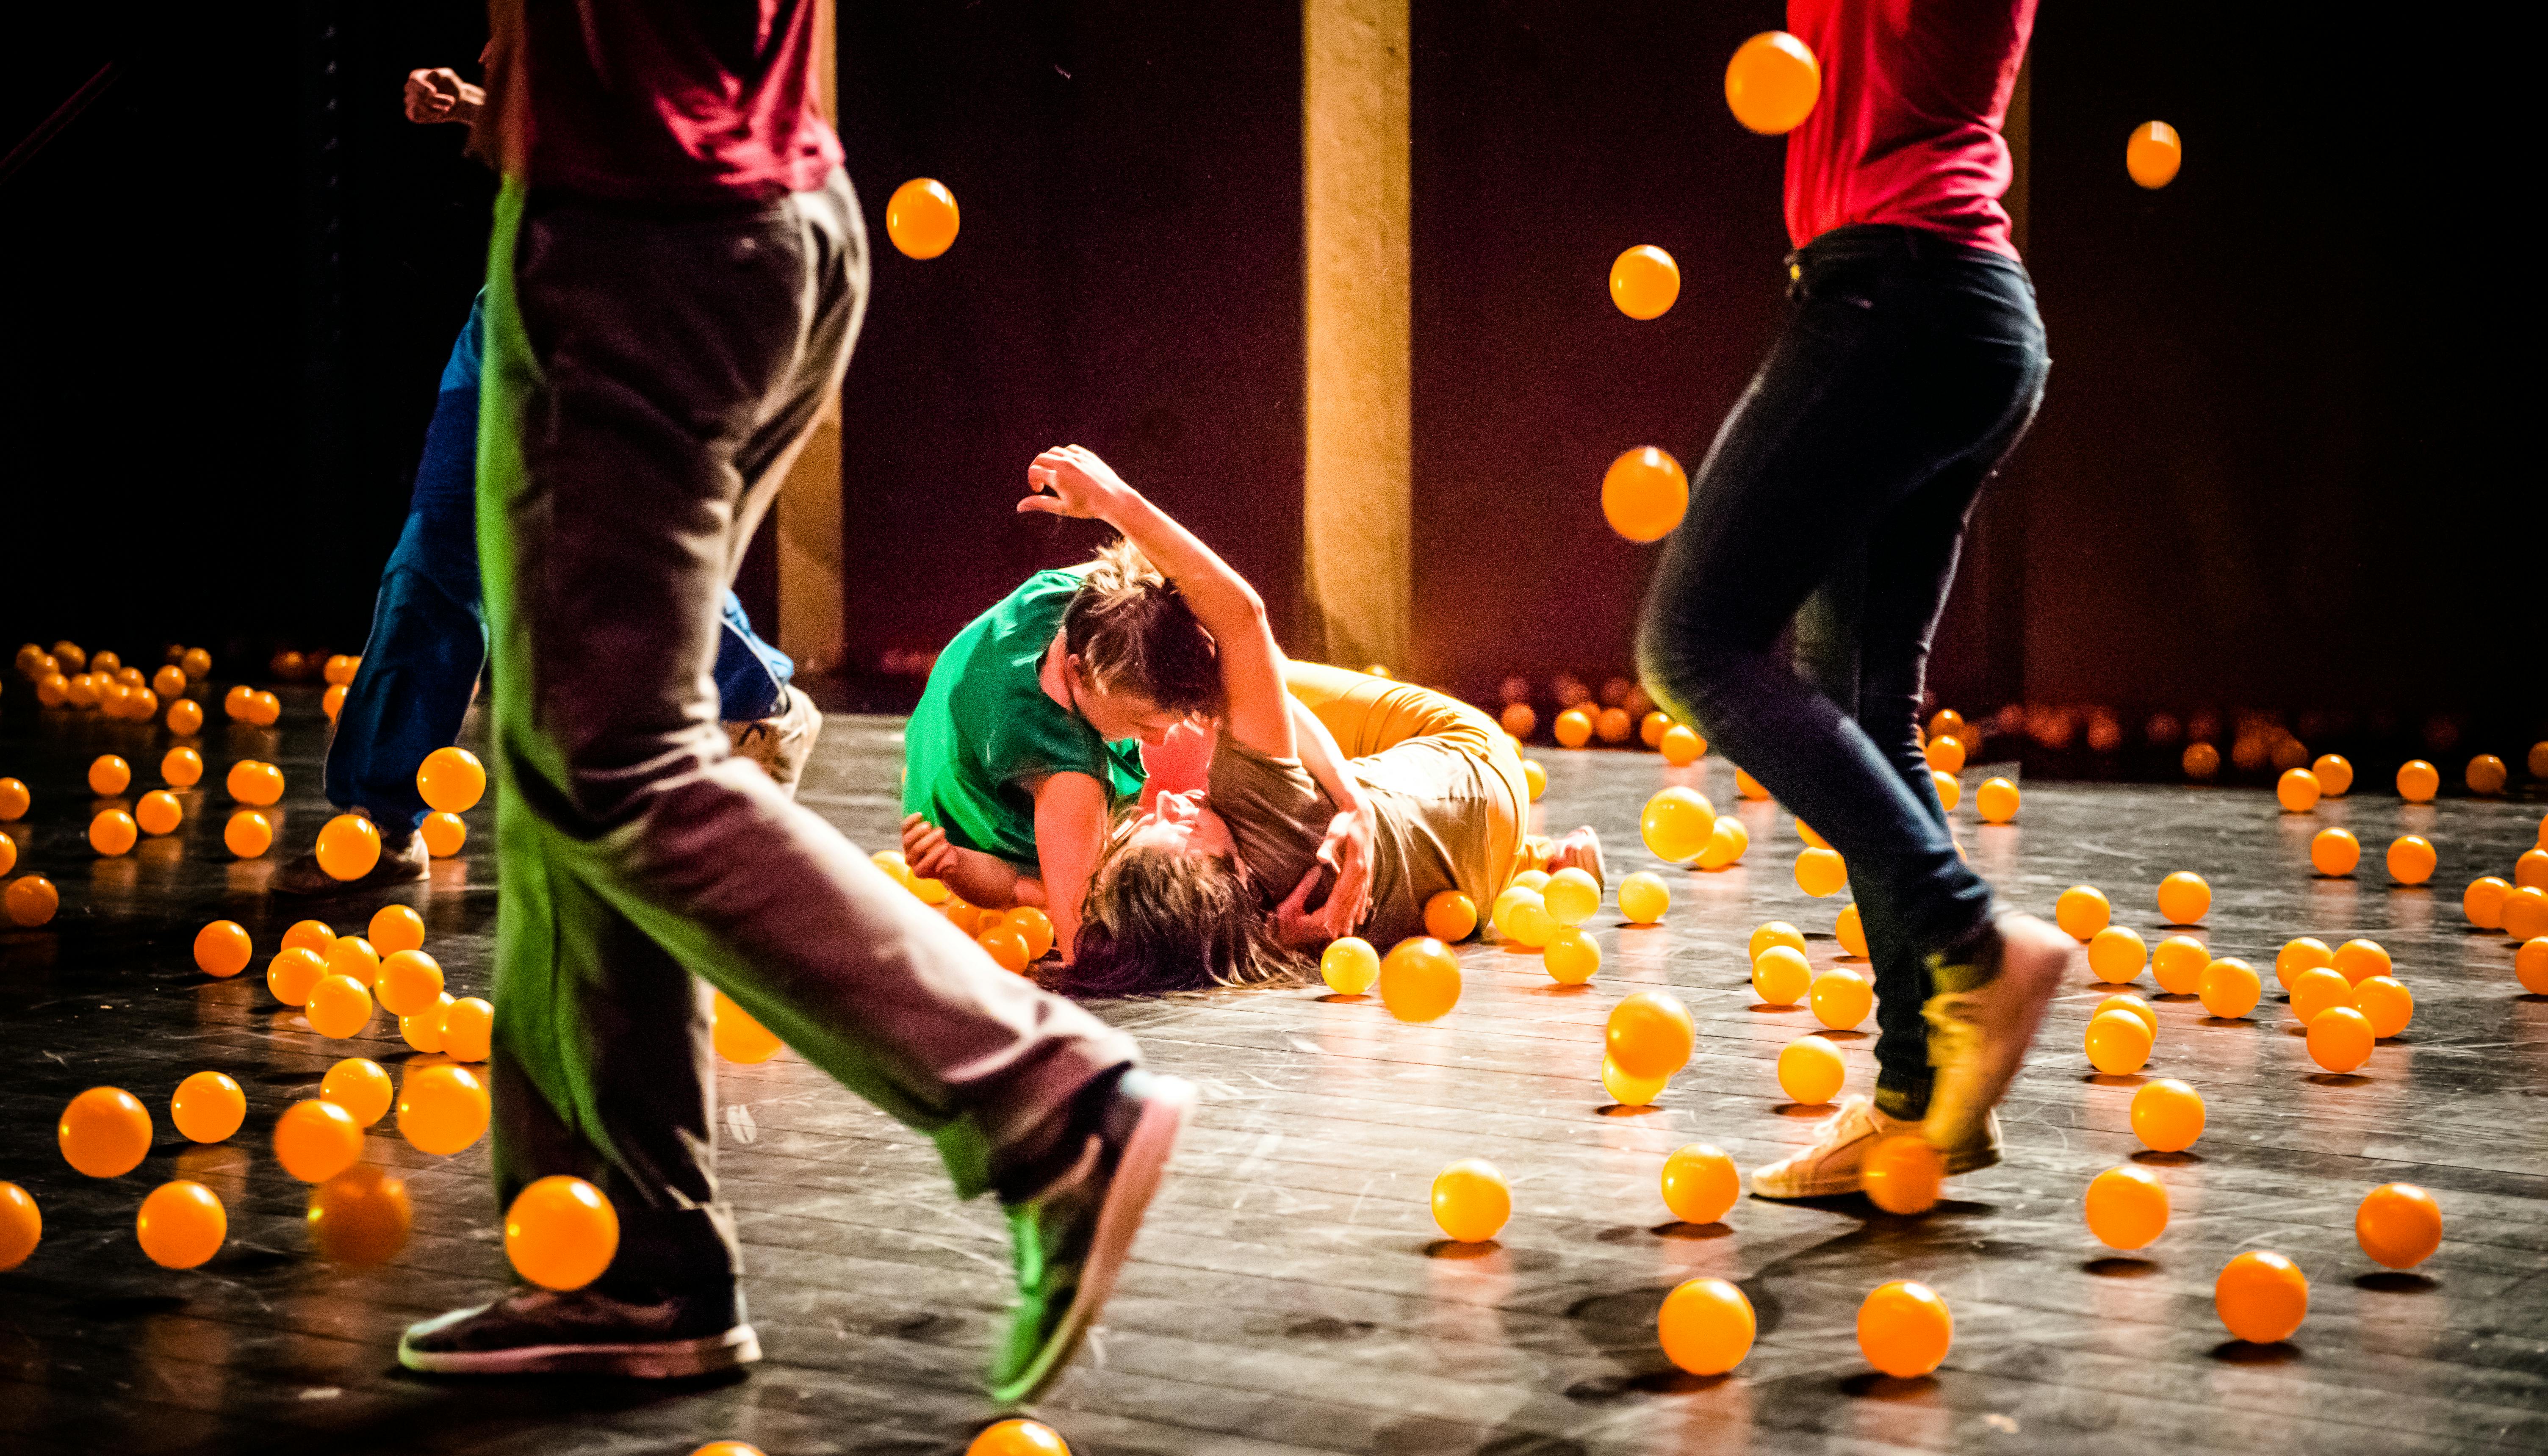 Gli artisti si esibiscono sul palco contornati da palline arancioni